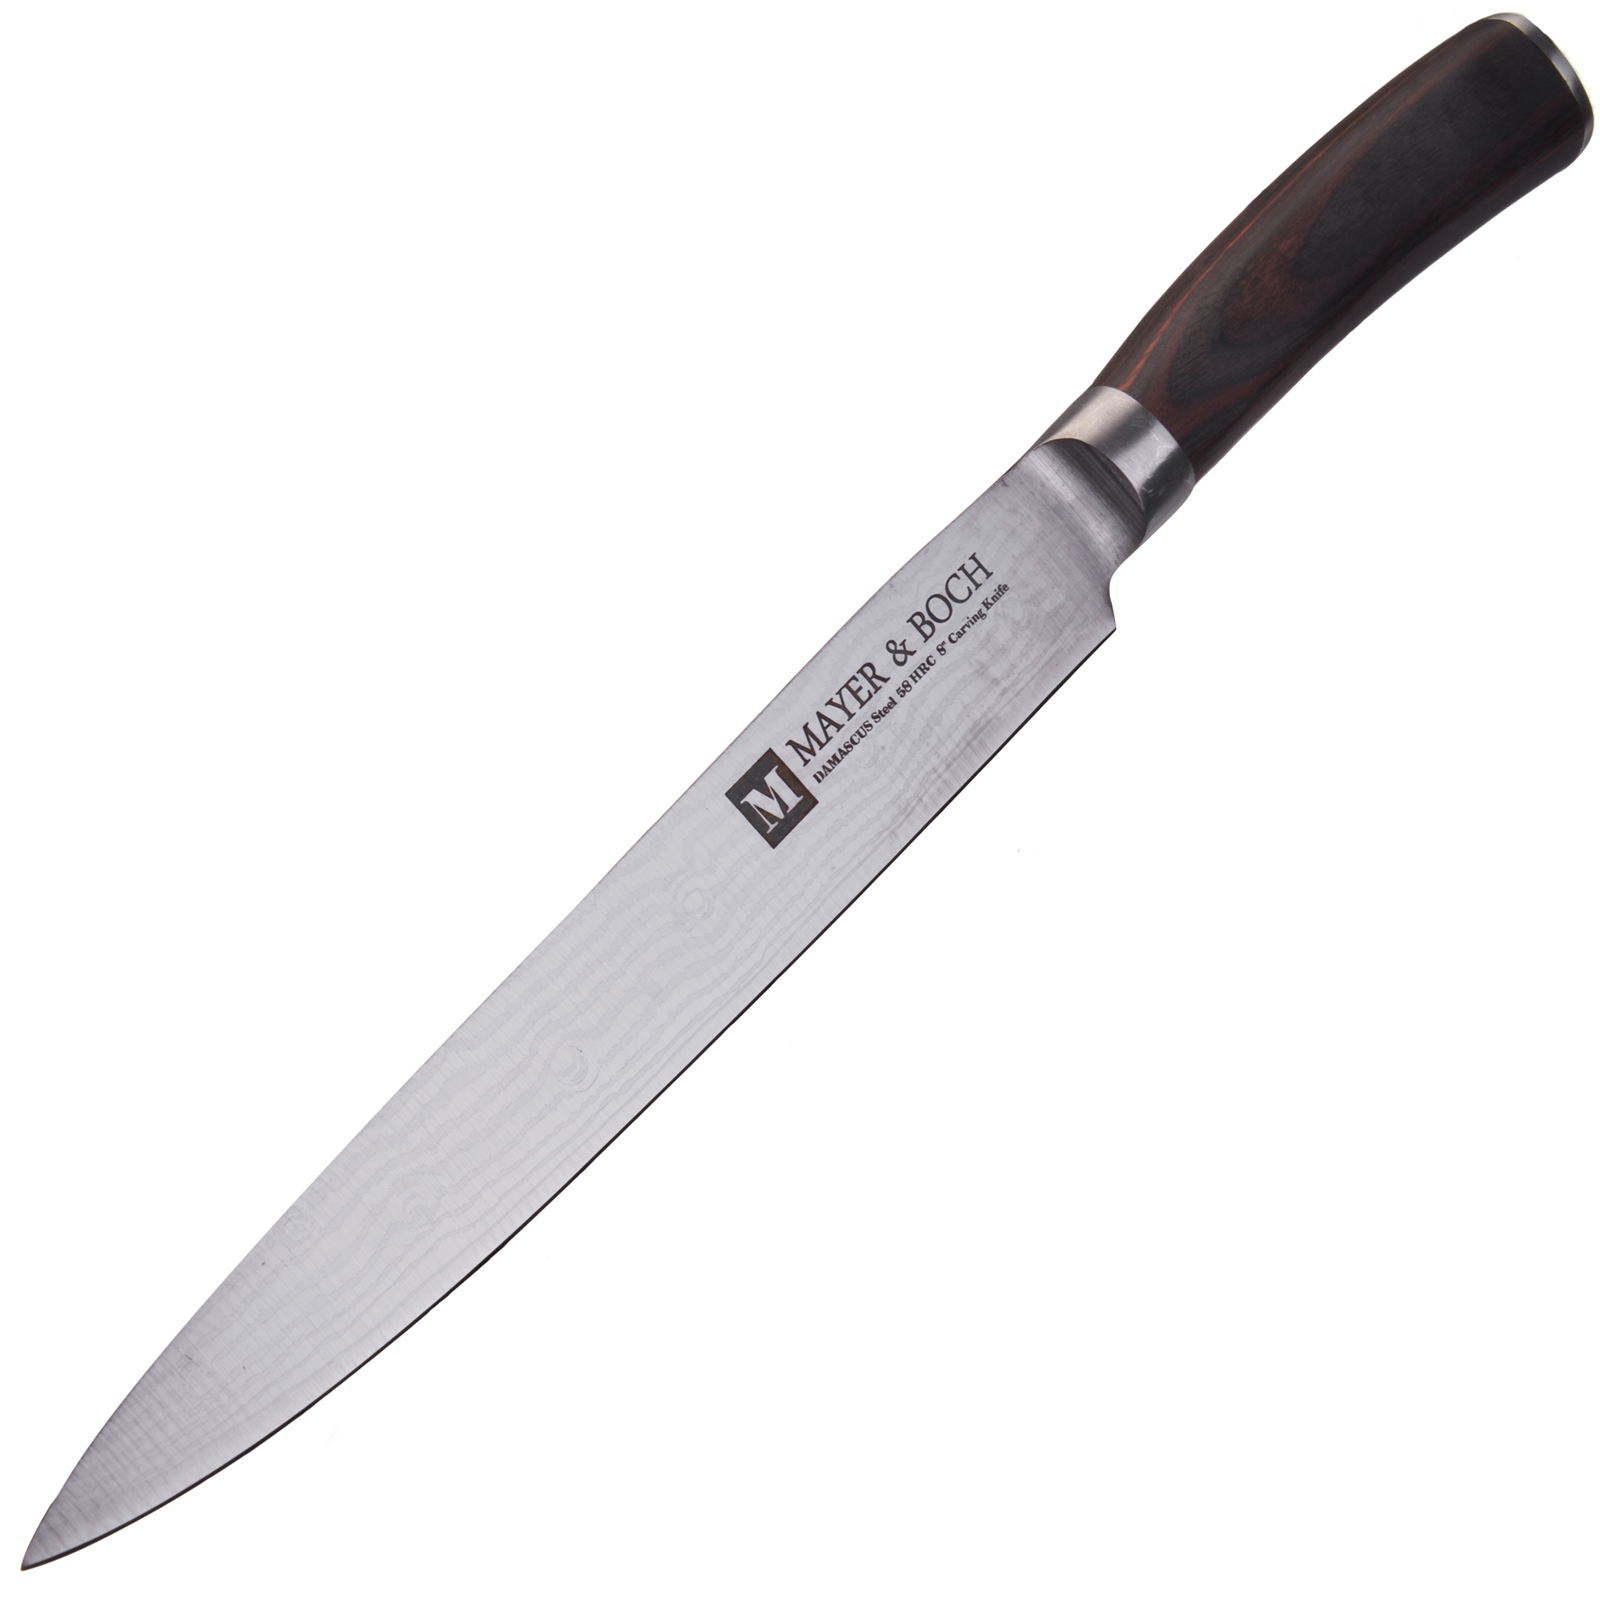 фото Нож разделочный Mayer & Boch Modest, цвет: коричневый, серебристый, длина лезвия 20,3 см